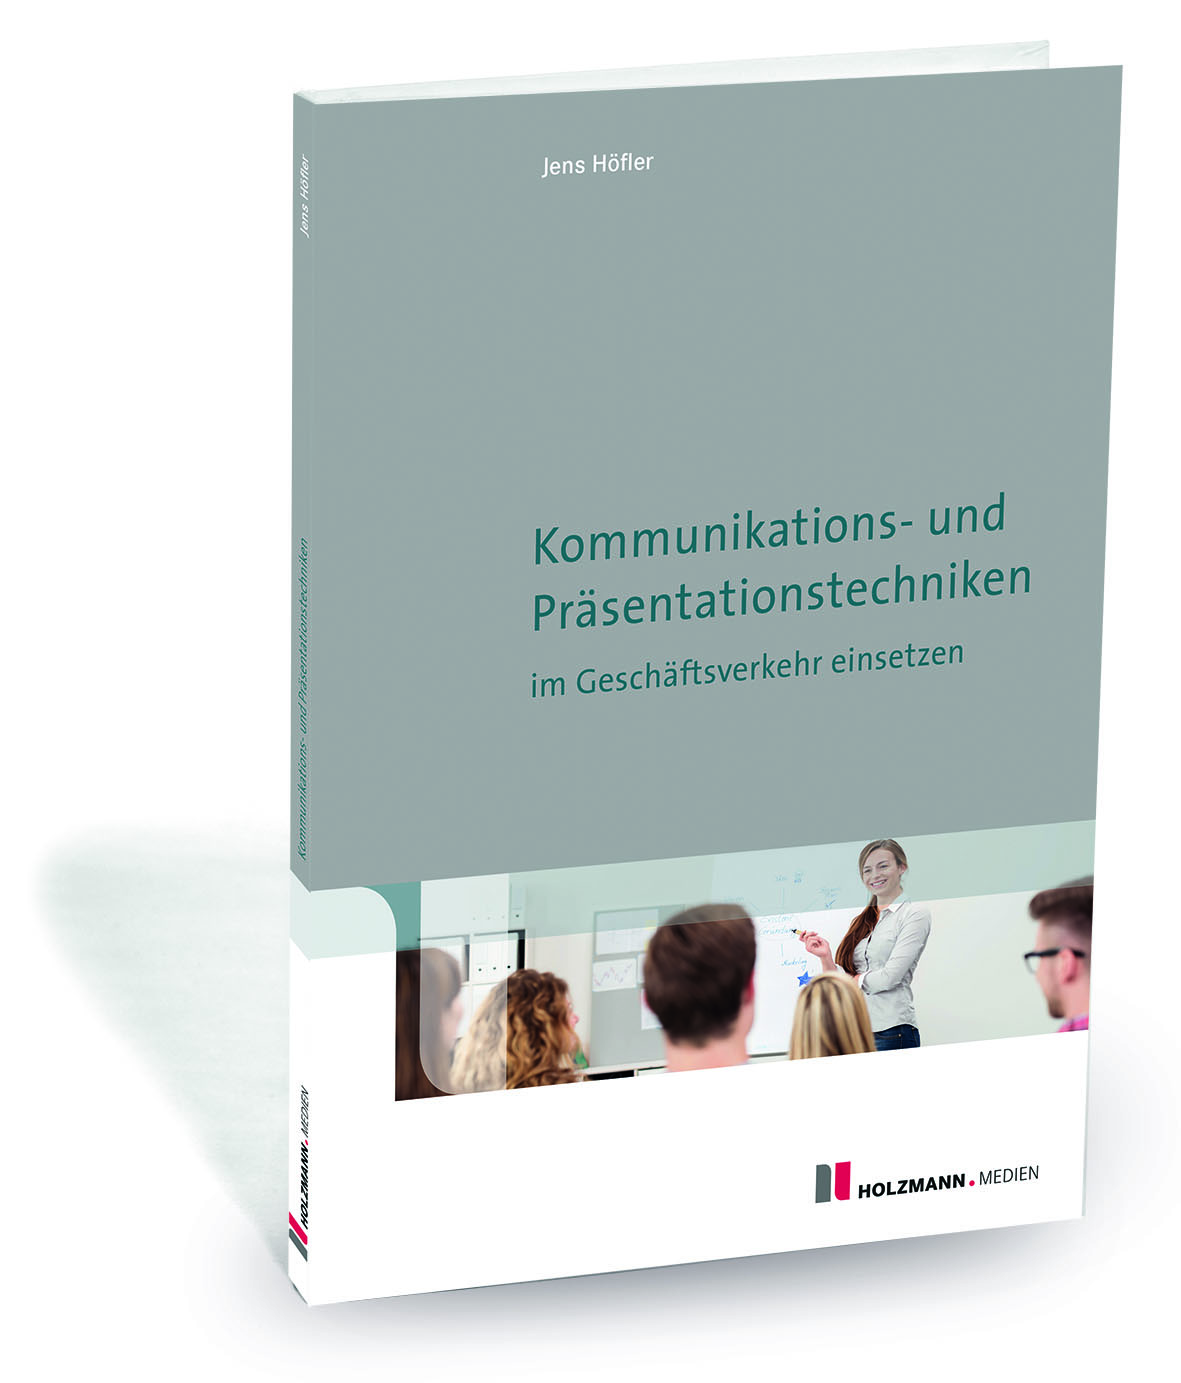 E-Book "Kommunikations- und Präsentationstechniken im Geschäftsverkehr einsetzen"